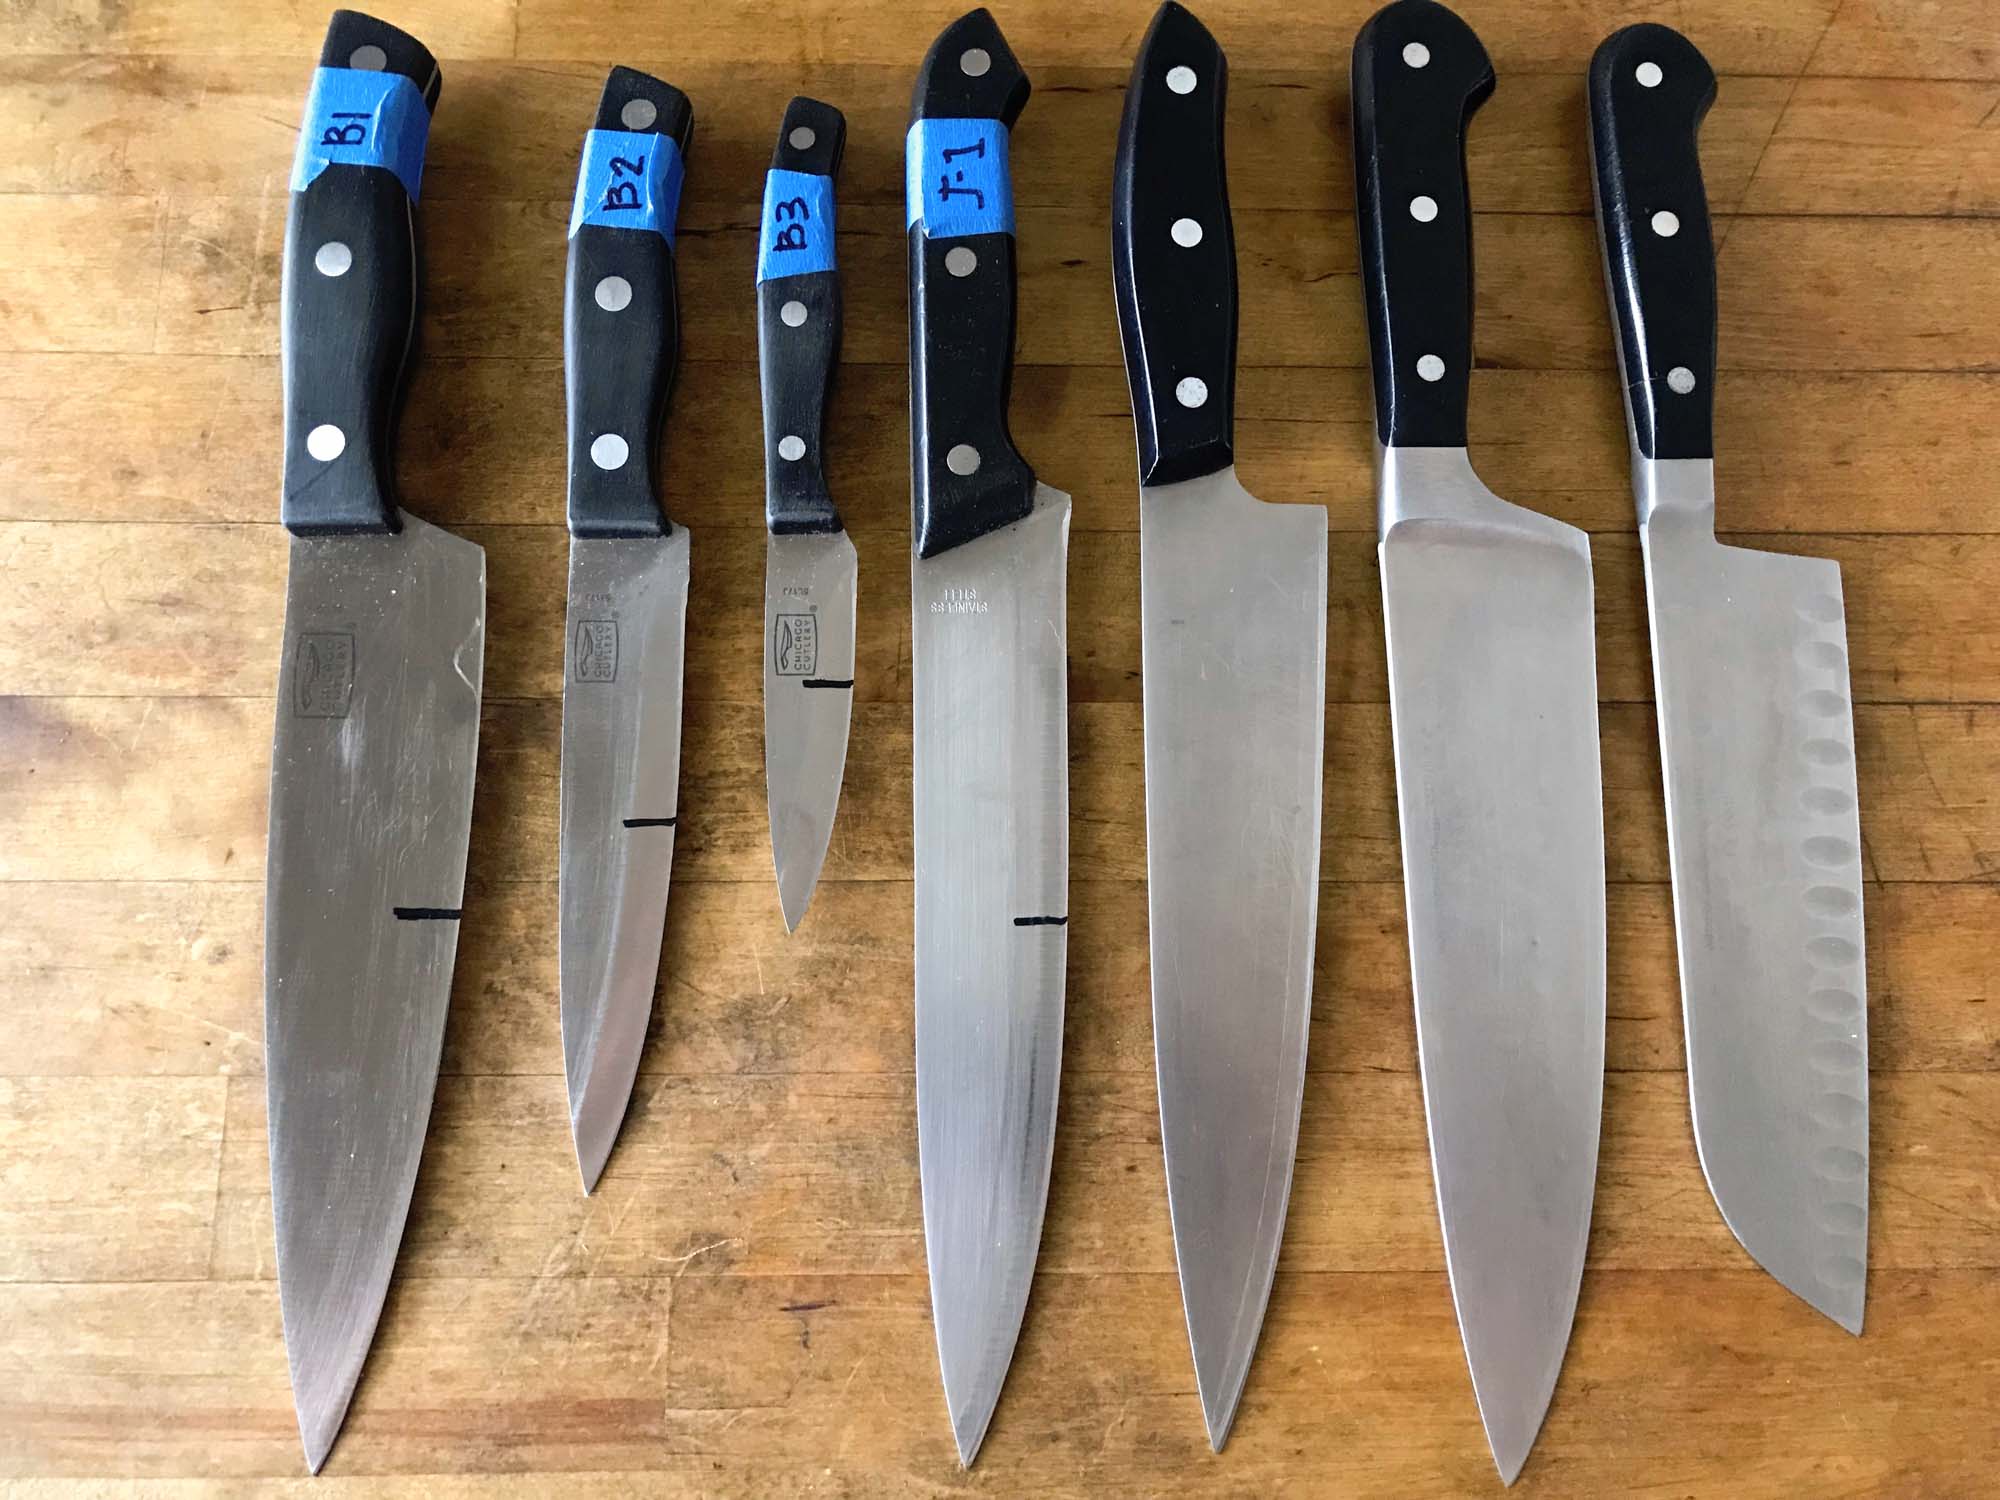 test kitchen knives